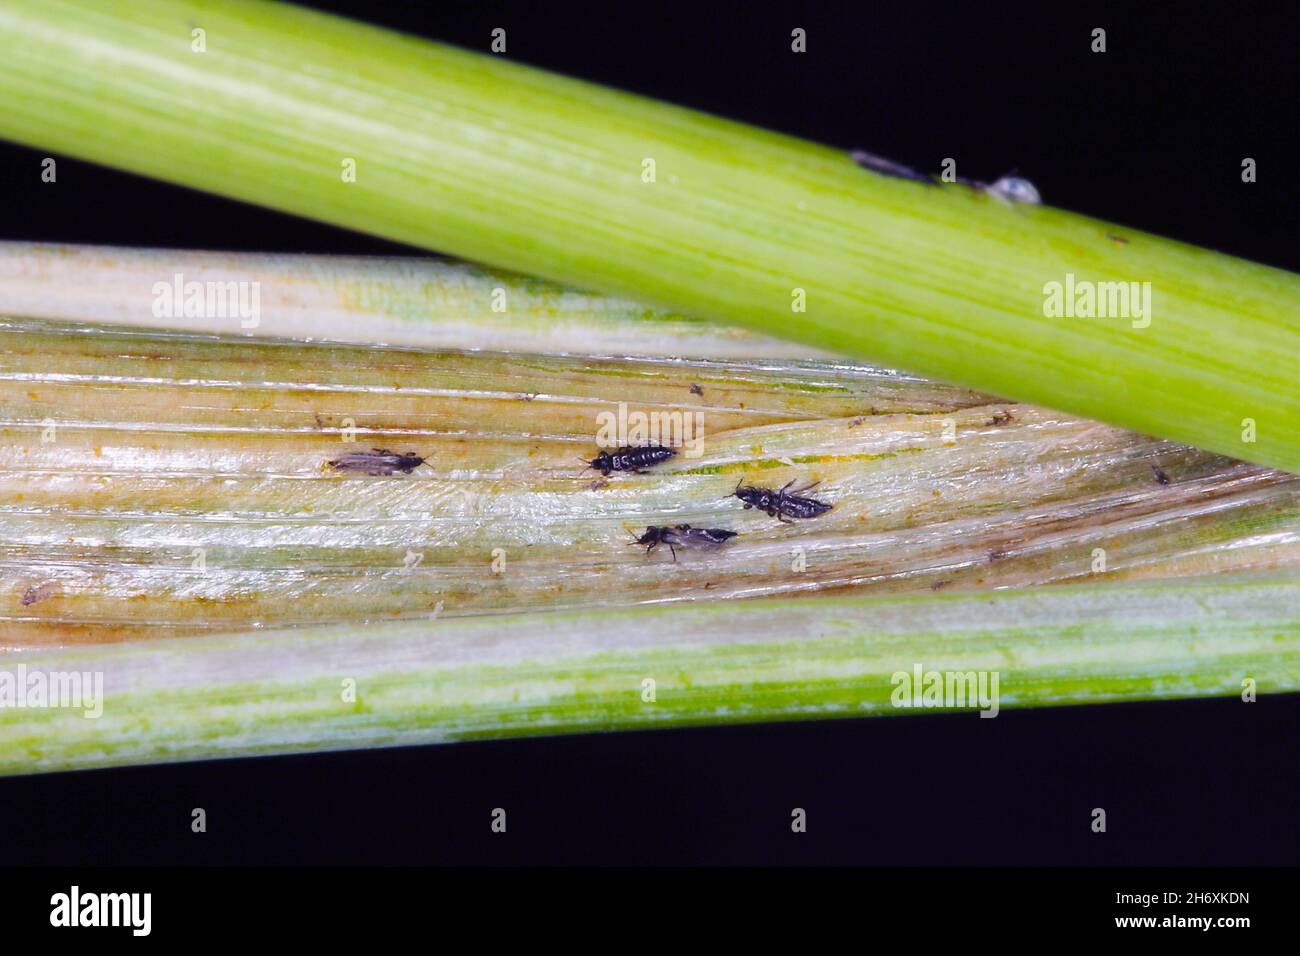 Thrips Thysanoptera auf Getreide. Es ist eine gefährliche Schädlingsbefall von Kulturen. Stockfoto